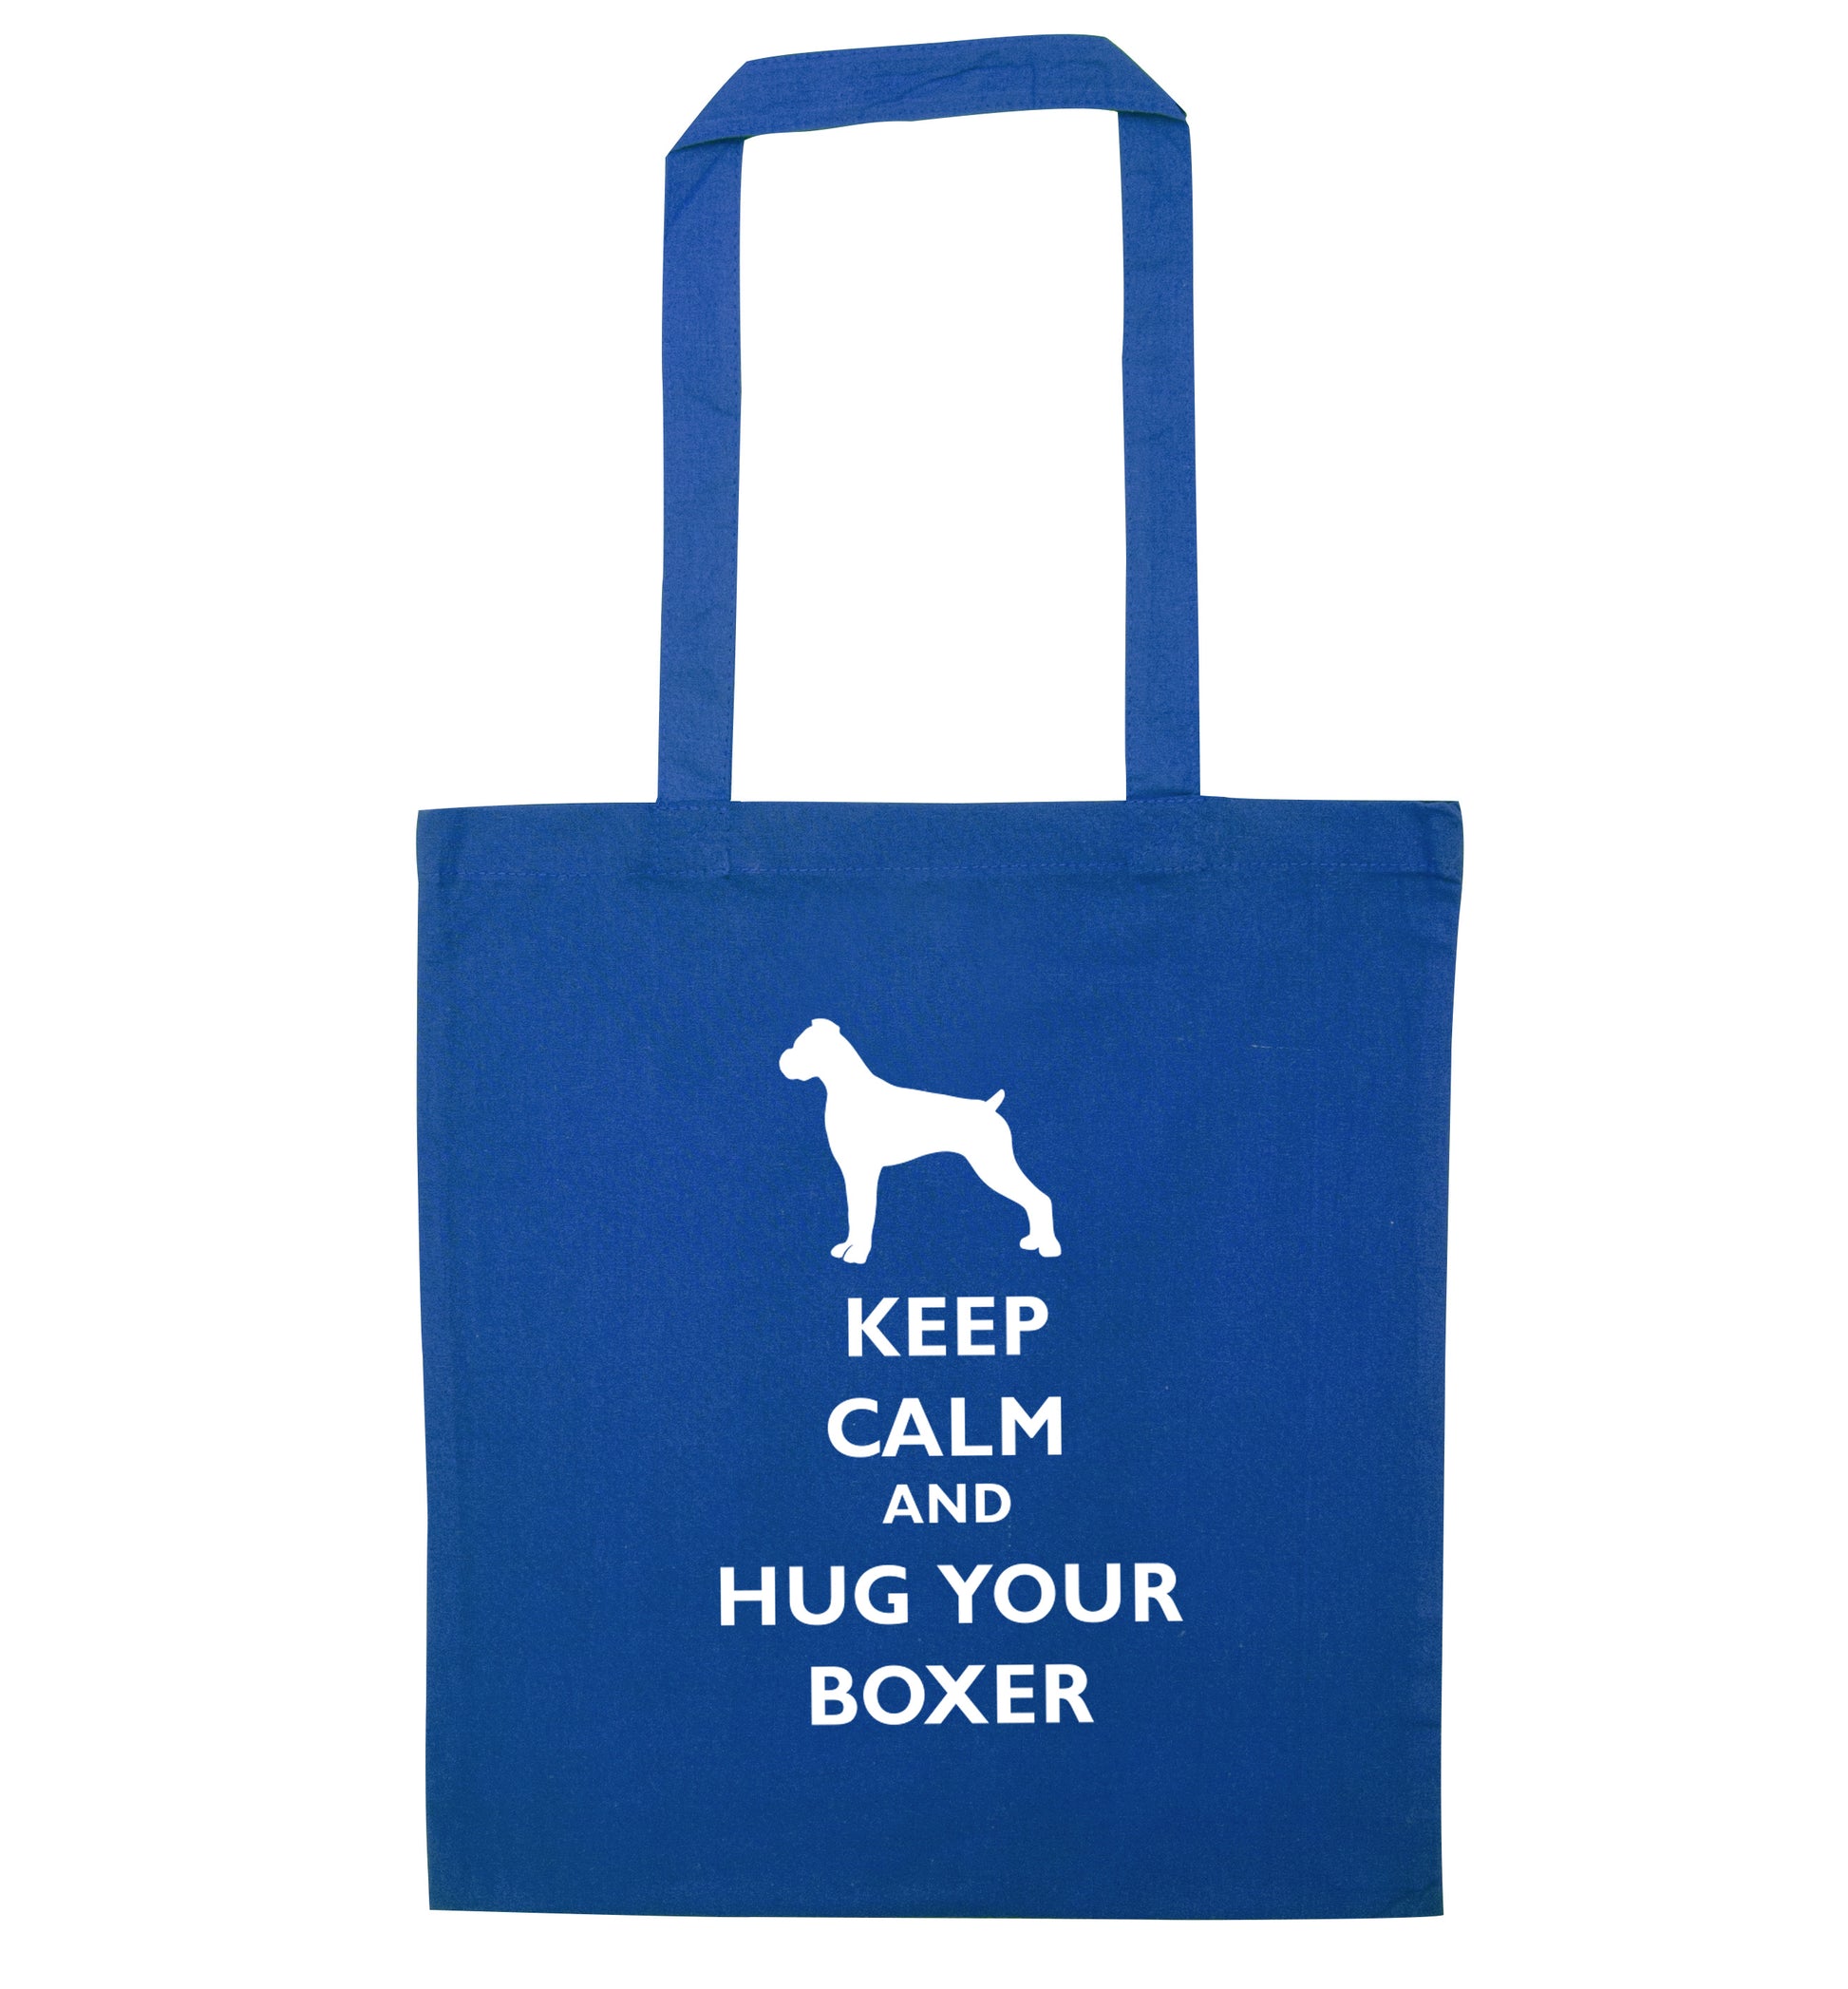 Keep calm and hug your boxer blue tote bag